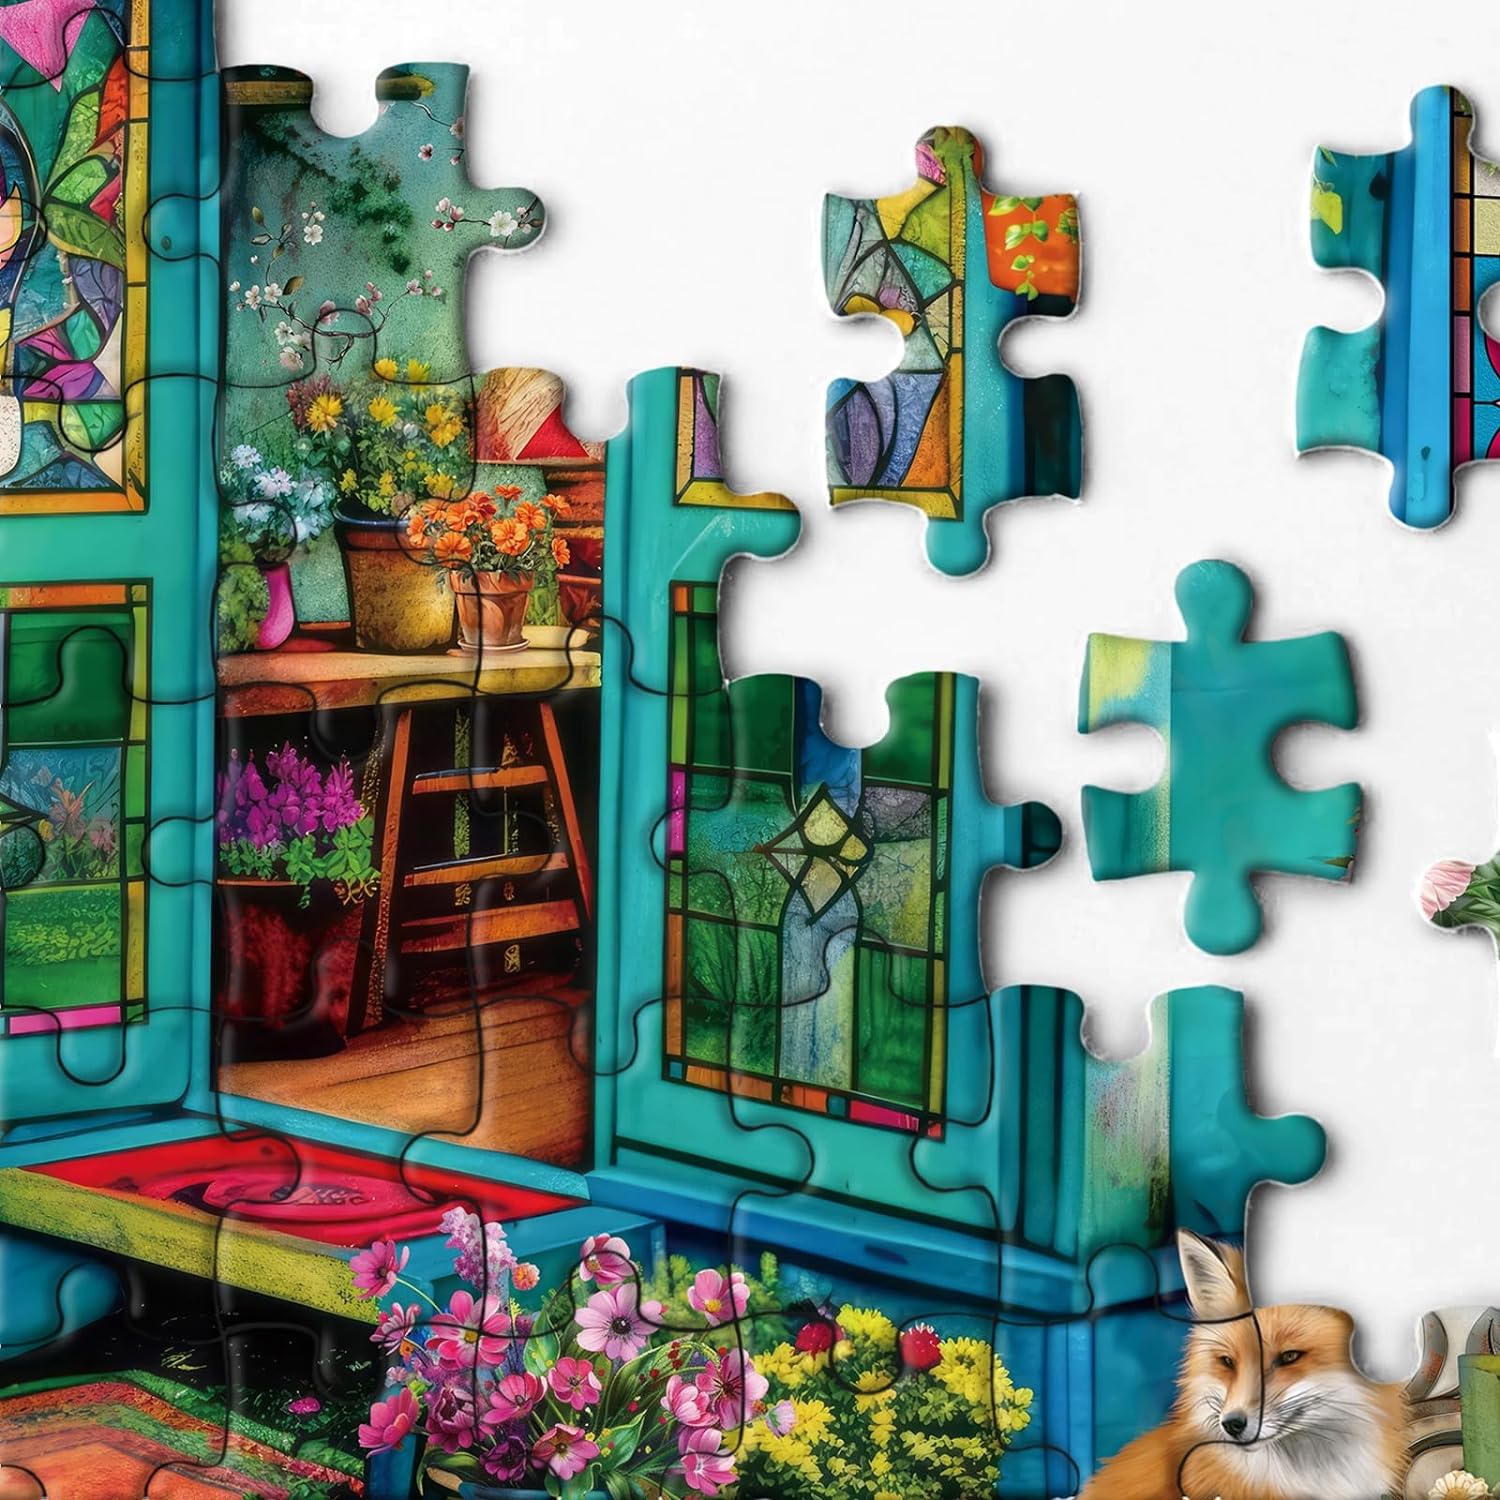 Flower Garden Jigsaw Puzzle 1000 Pieces